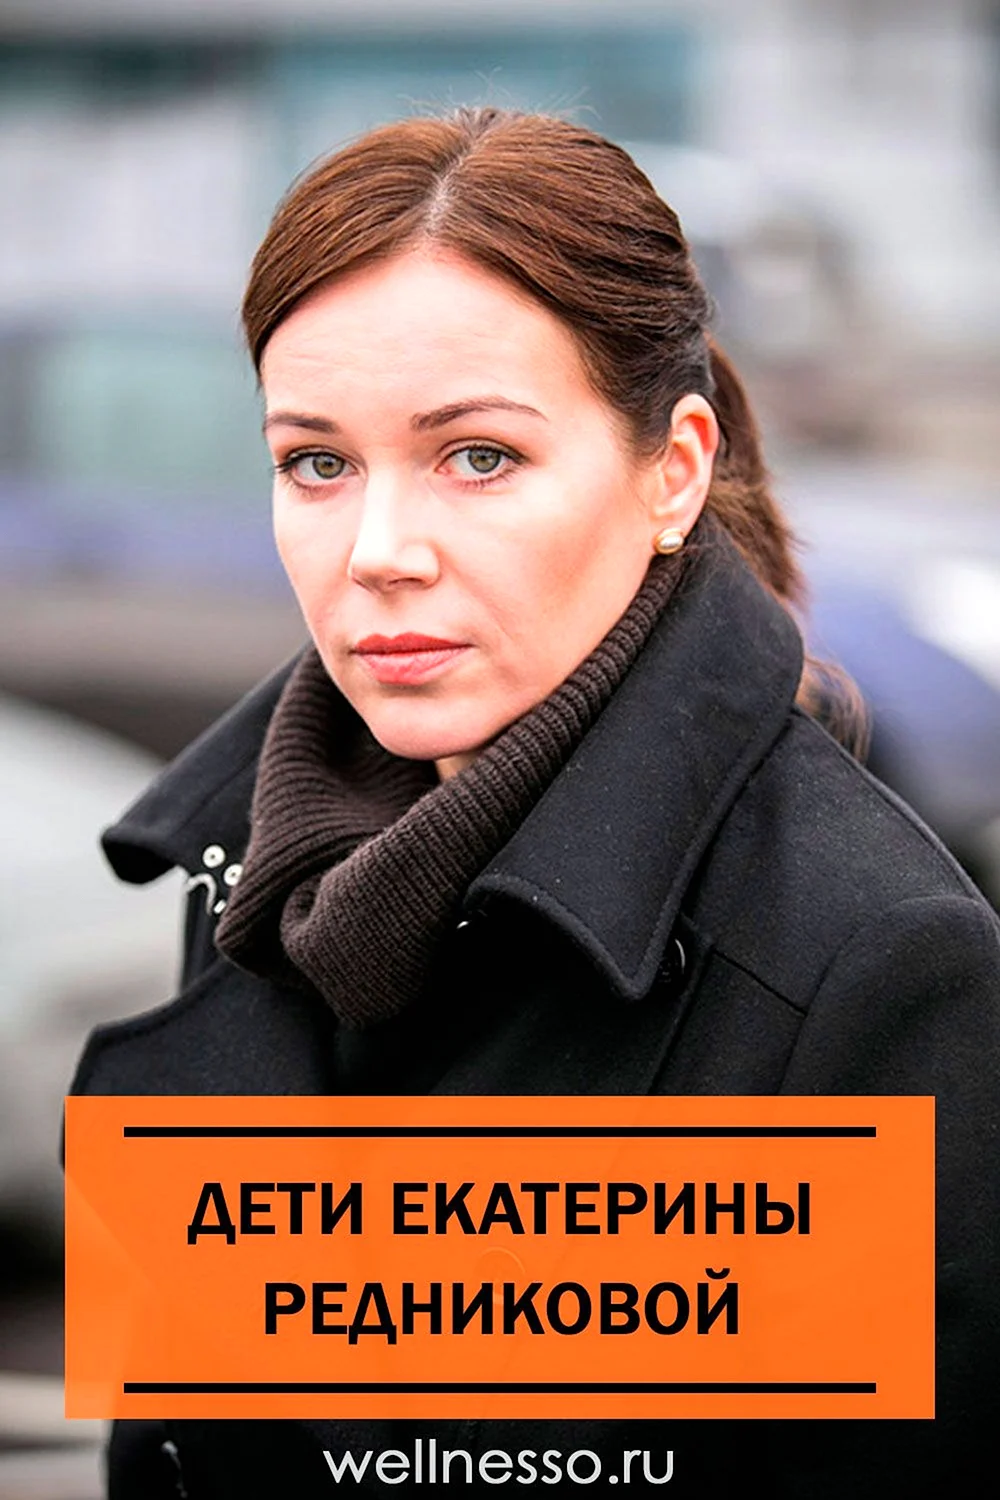 Екатерина редниковава